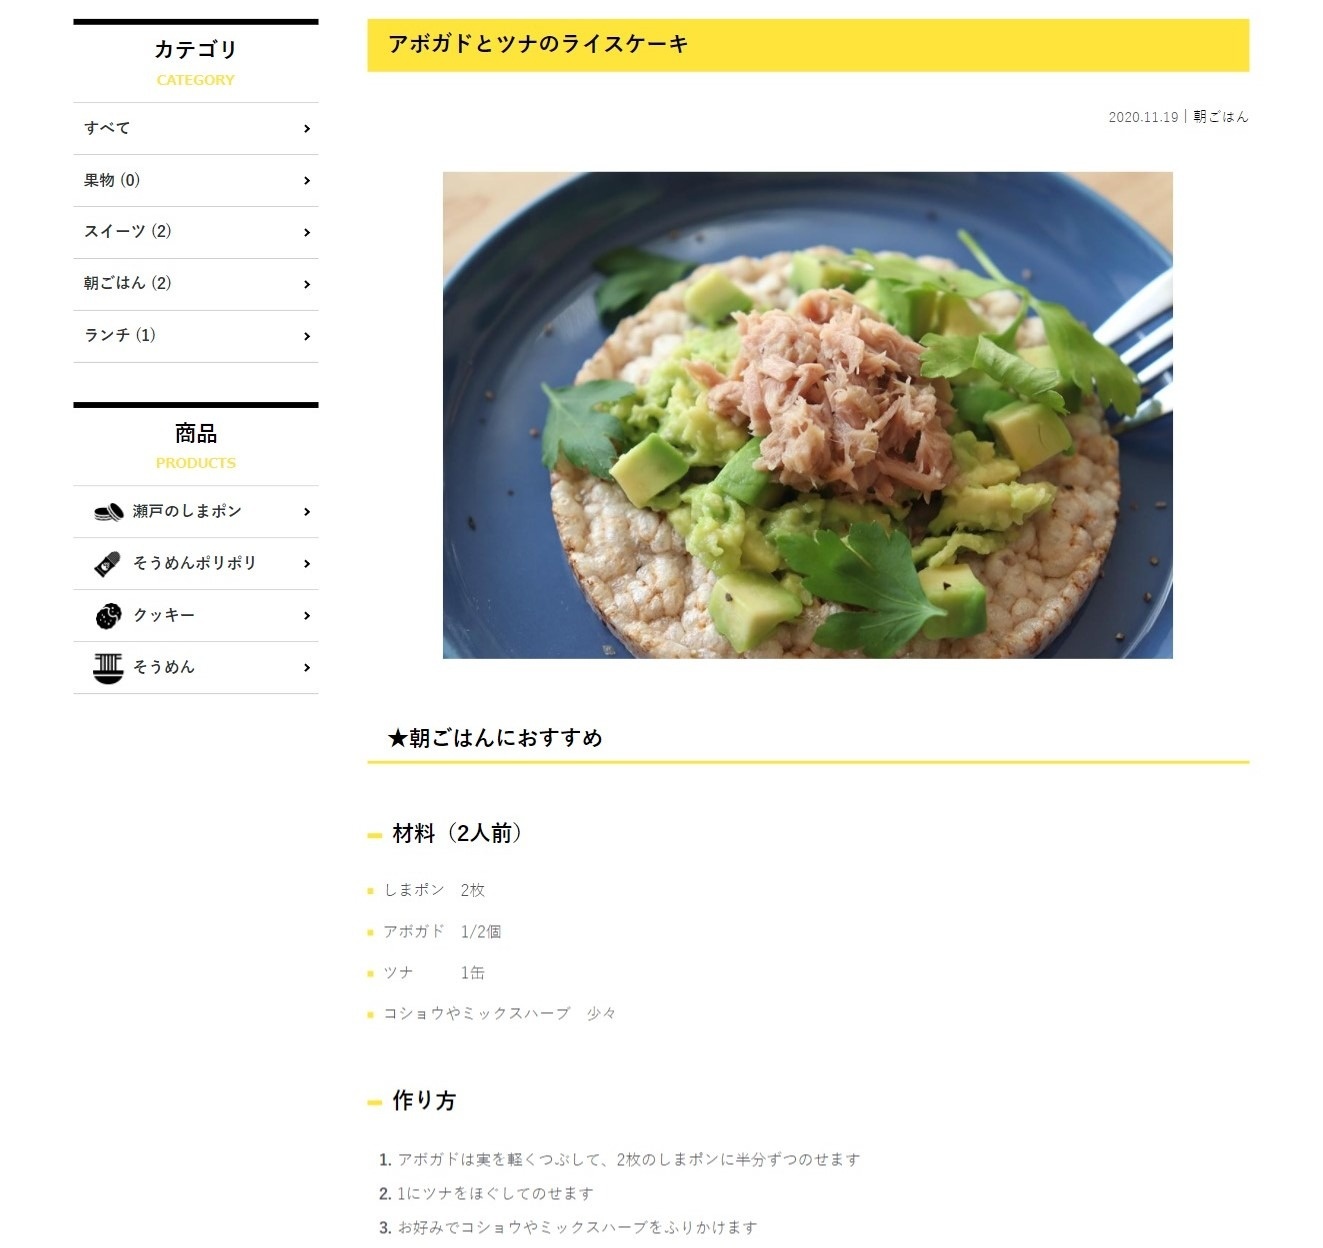 有限会社菊水堂様 通販サイト「おいしいレシピ」